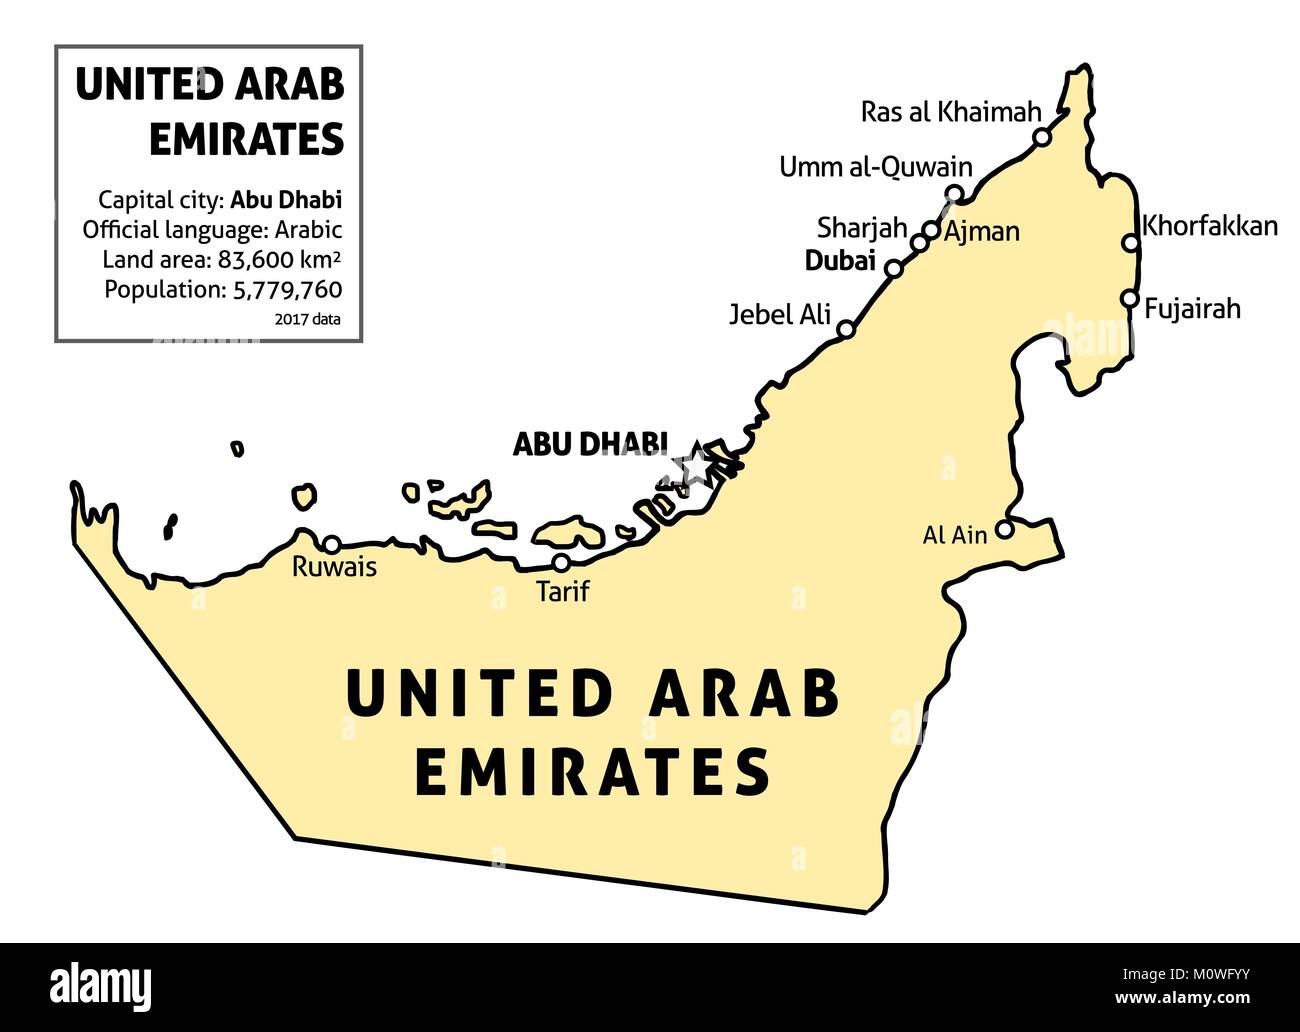 Emirats arabes unis (EAU) carte. Vecteur contour carte pays avec les principales villes et le tableau des données. Illustration de Vecteur